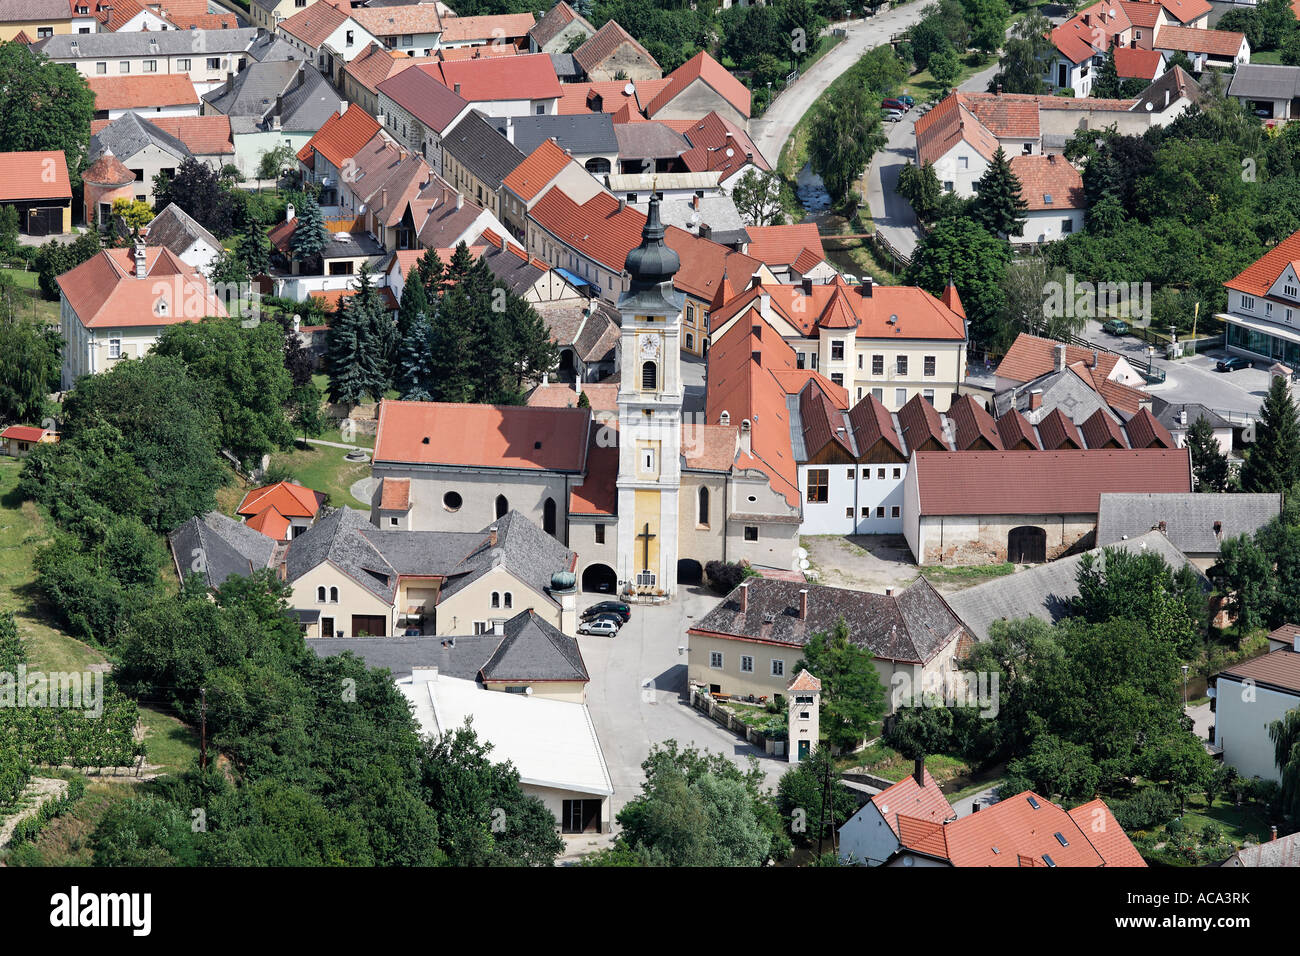 Petite commune rurale de Furth près de Goettweig, Krems-Land, Mostviertel Basse-Autriche, Autriche Banque D'Images